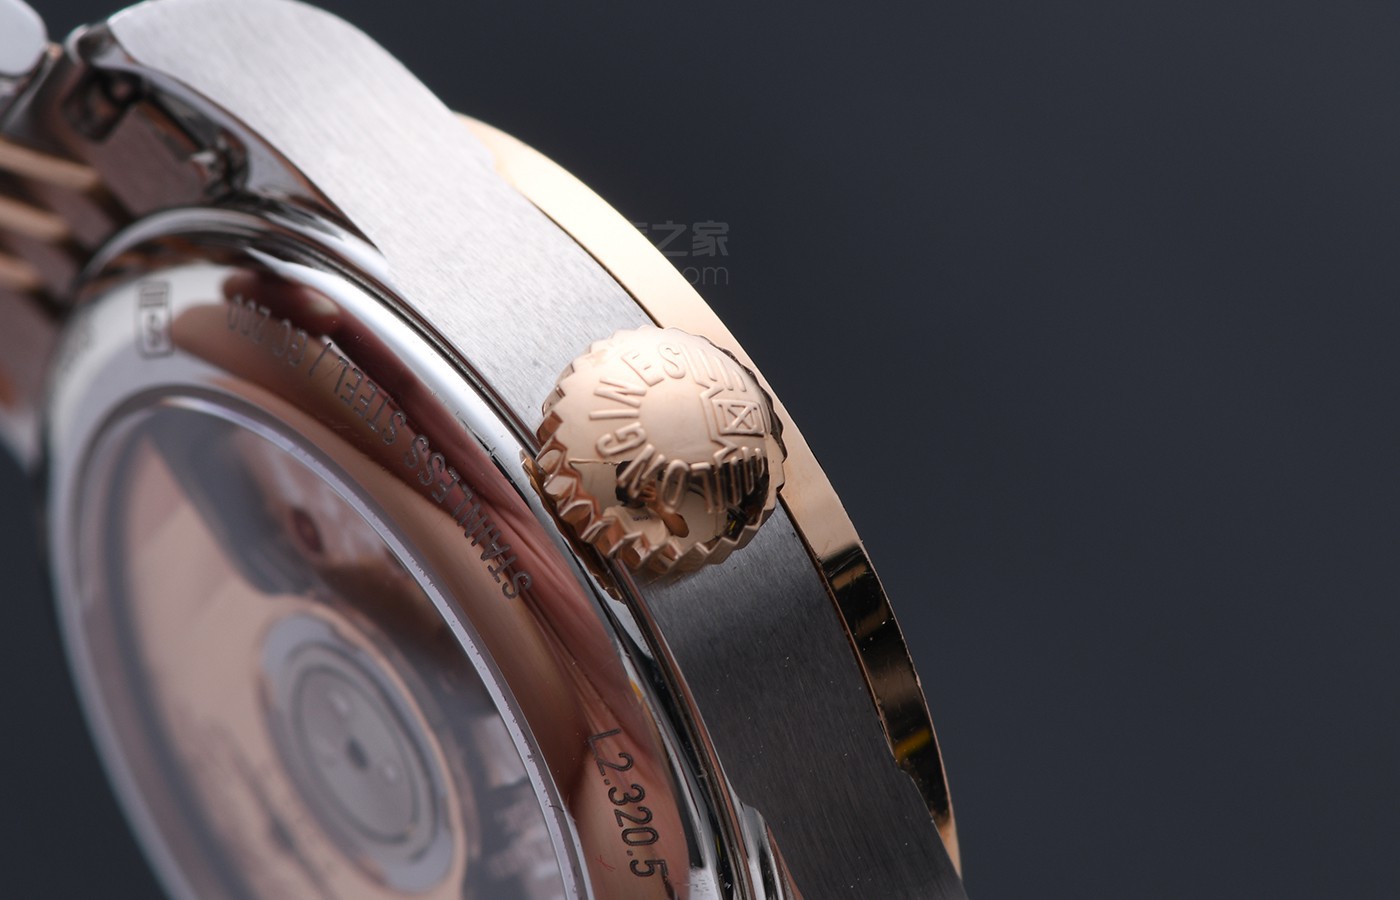 始兼并|偶遇经典雅致风采 品评浪琴手表开创者系列产品腕表